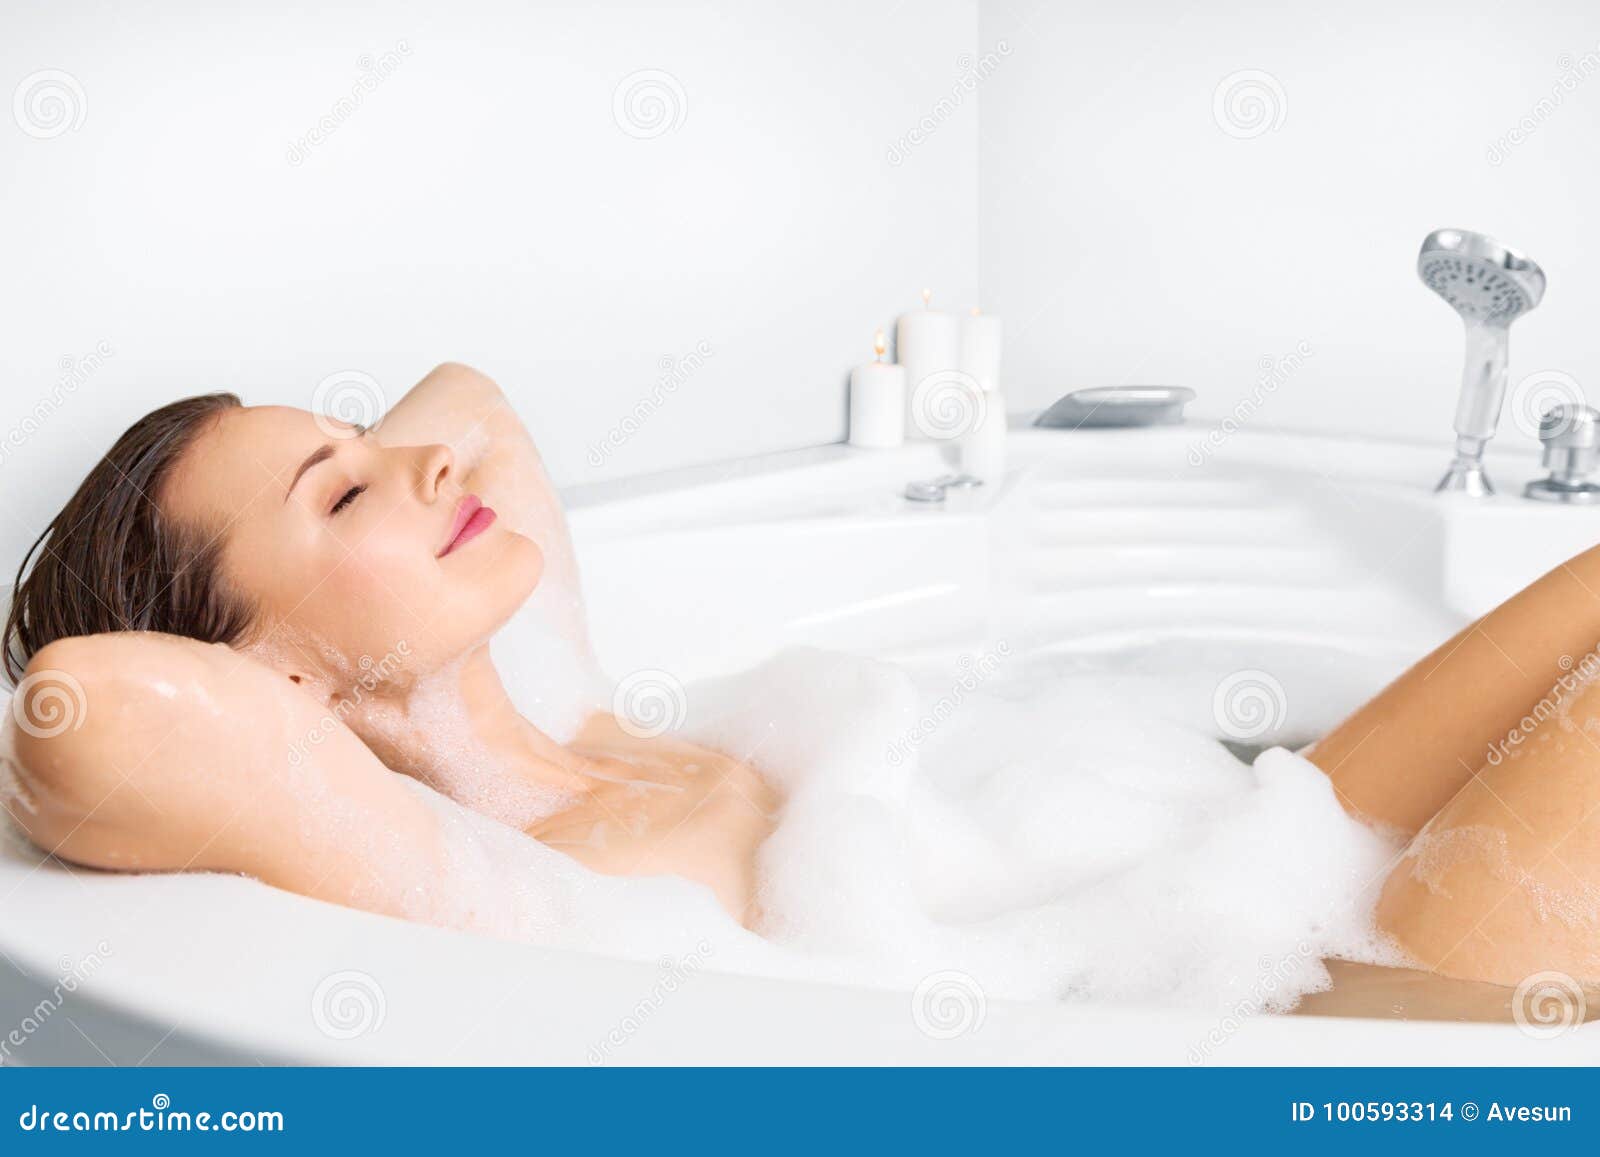 young woman enjoying bathing in bathtub